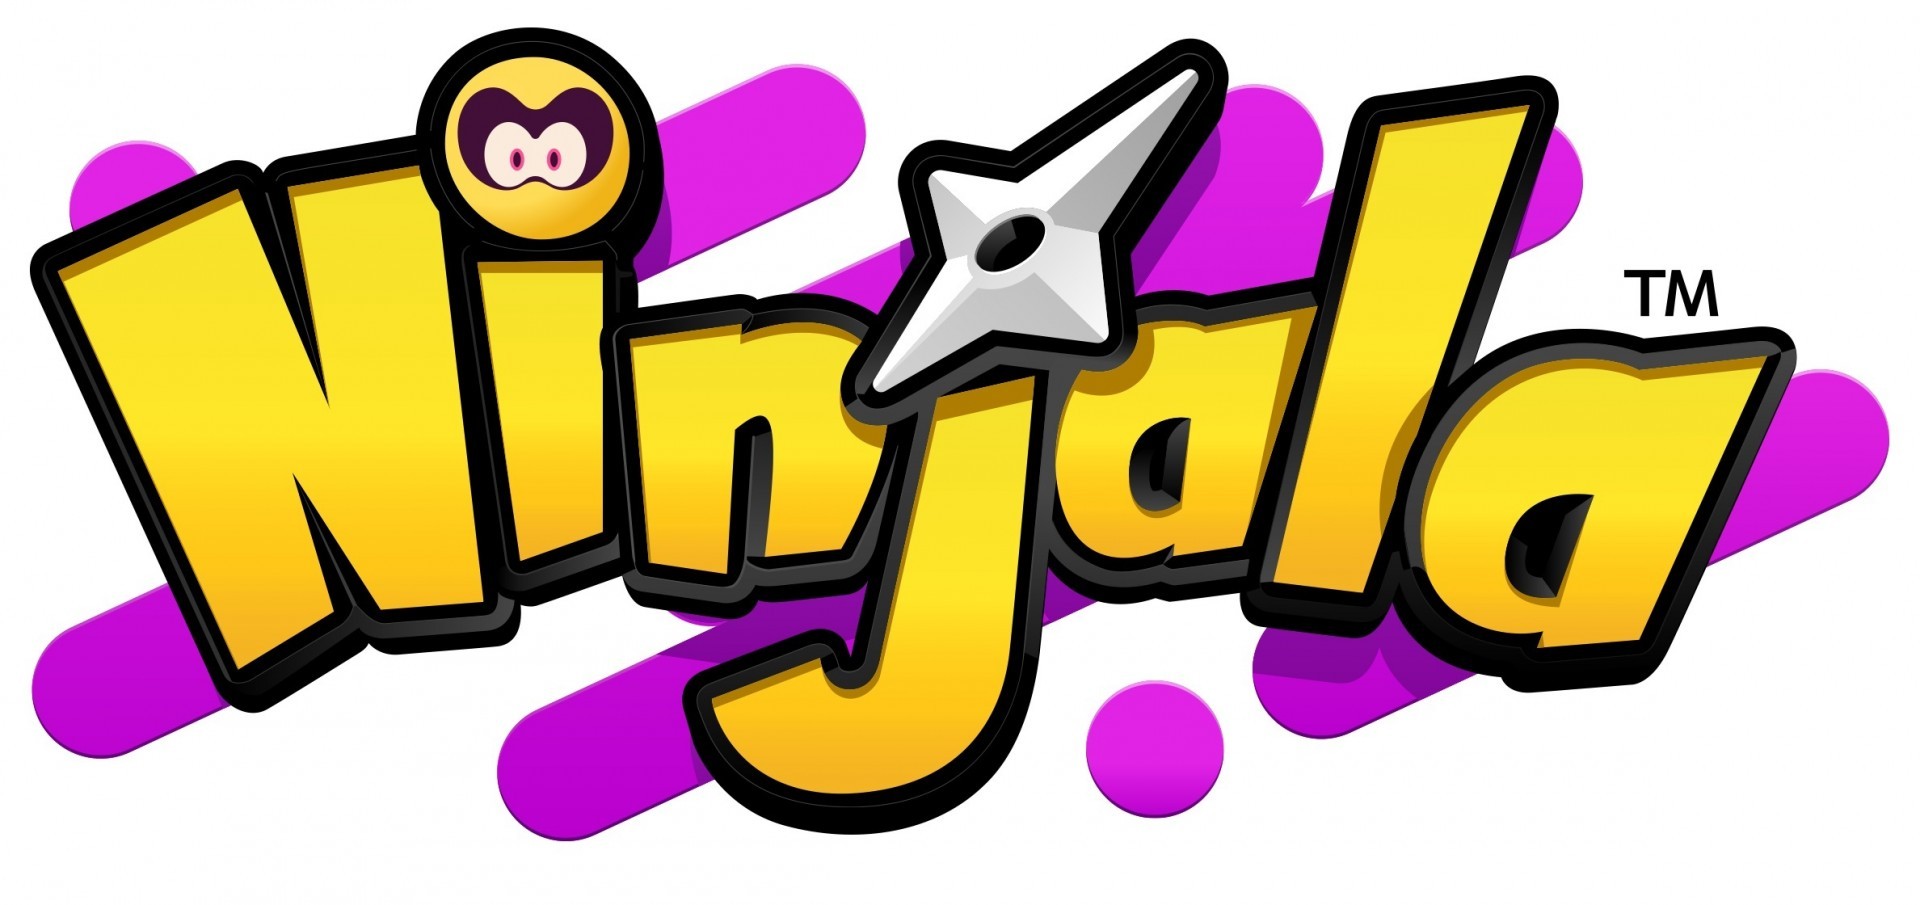 《Ninjala 泡泡糖忍戰》全世界累計突破 700 萬下載 贈送 100 Jala